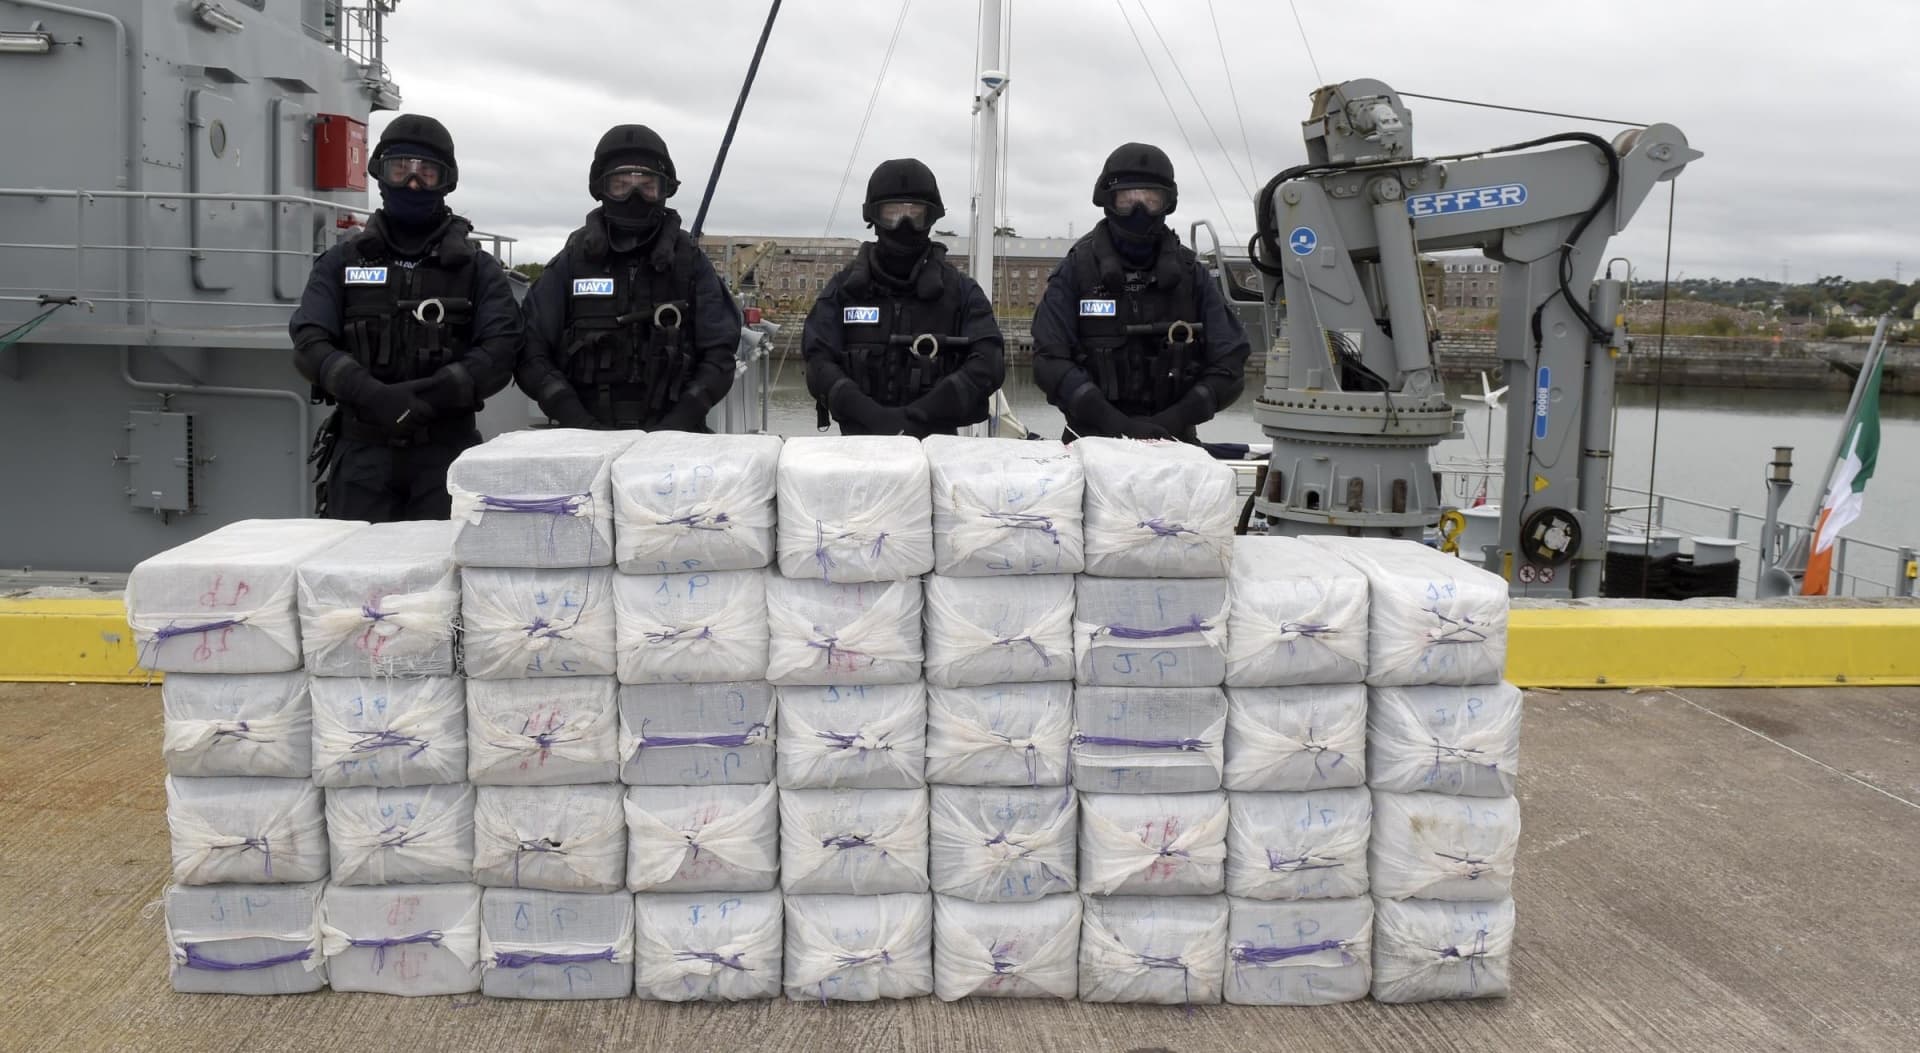 Több mint negyed tonna kokaint foglalt le a brit rendőrség egy jachton